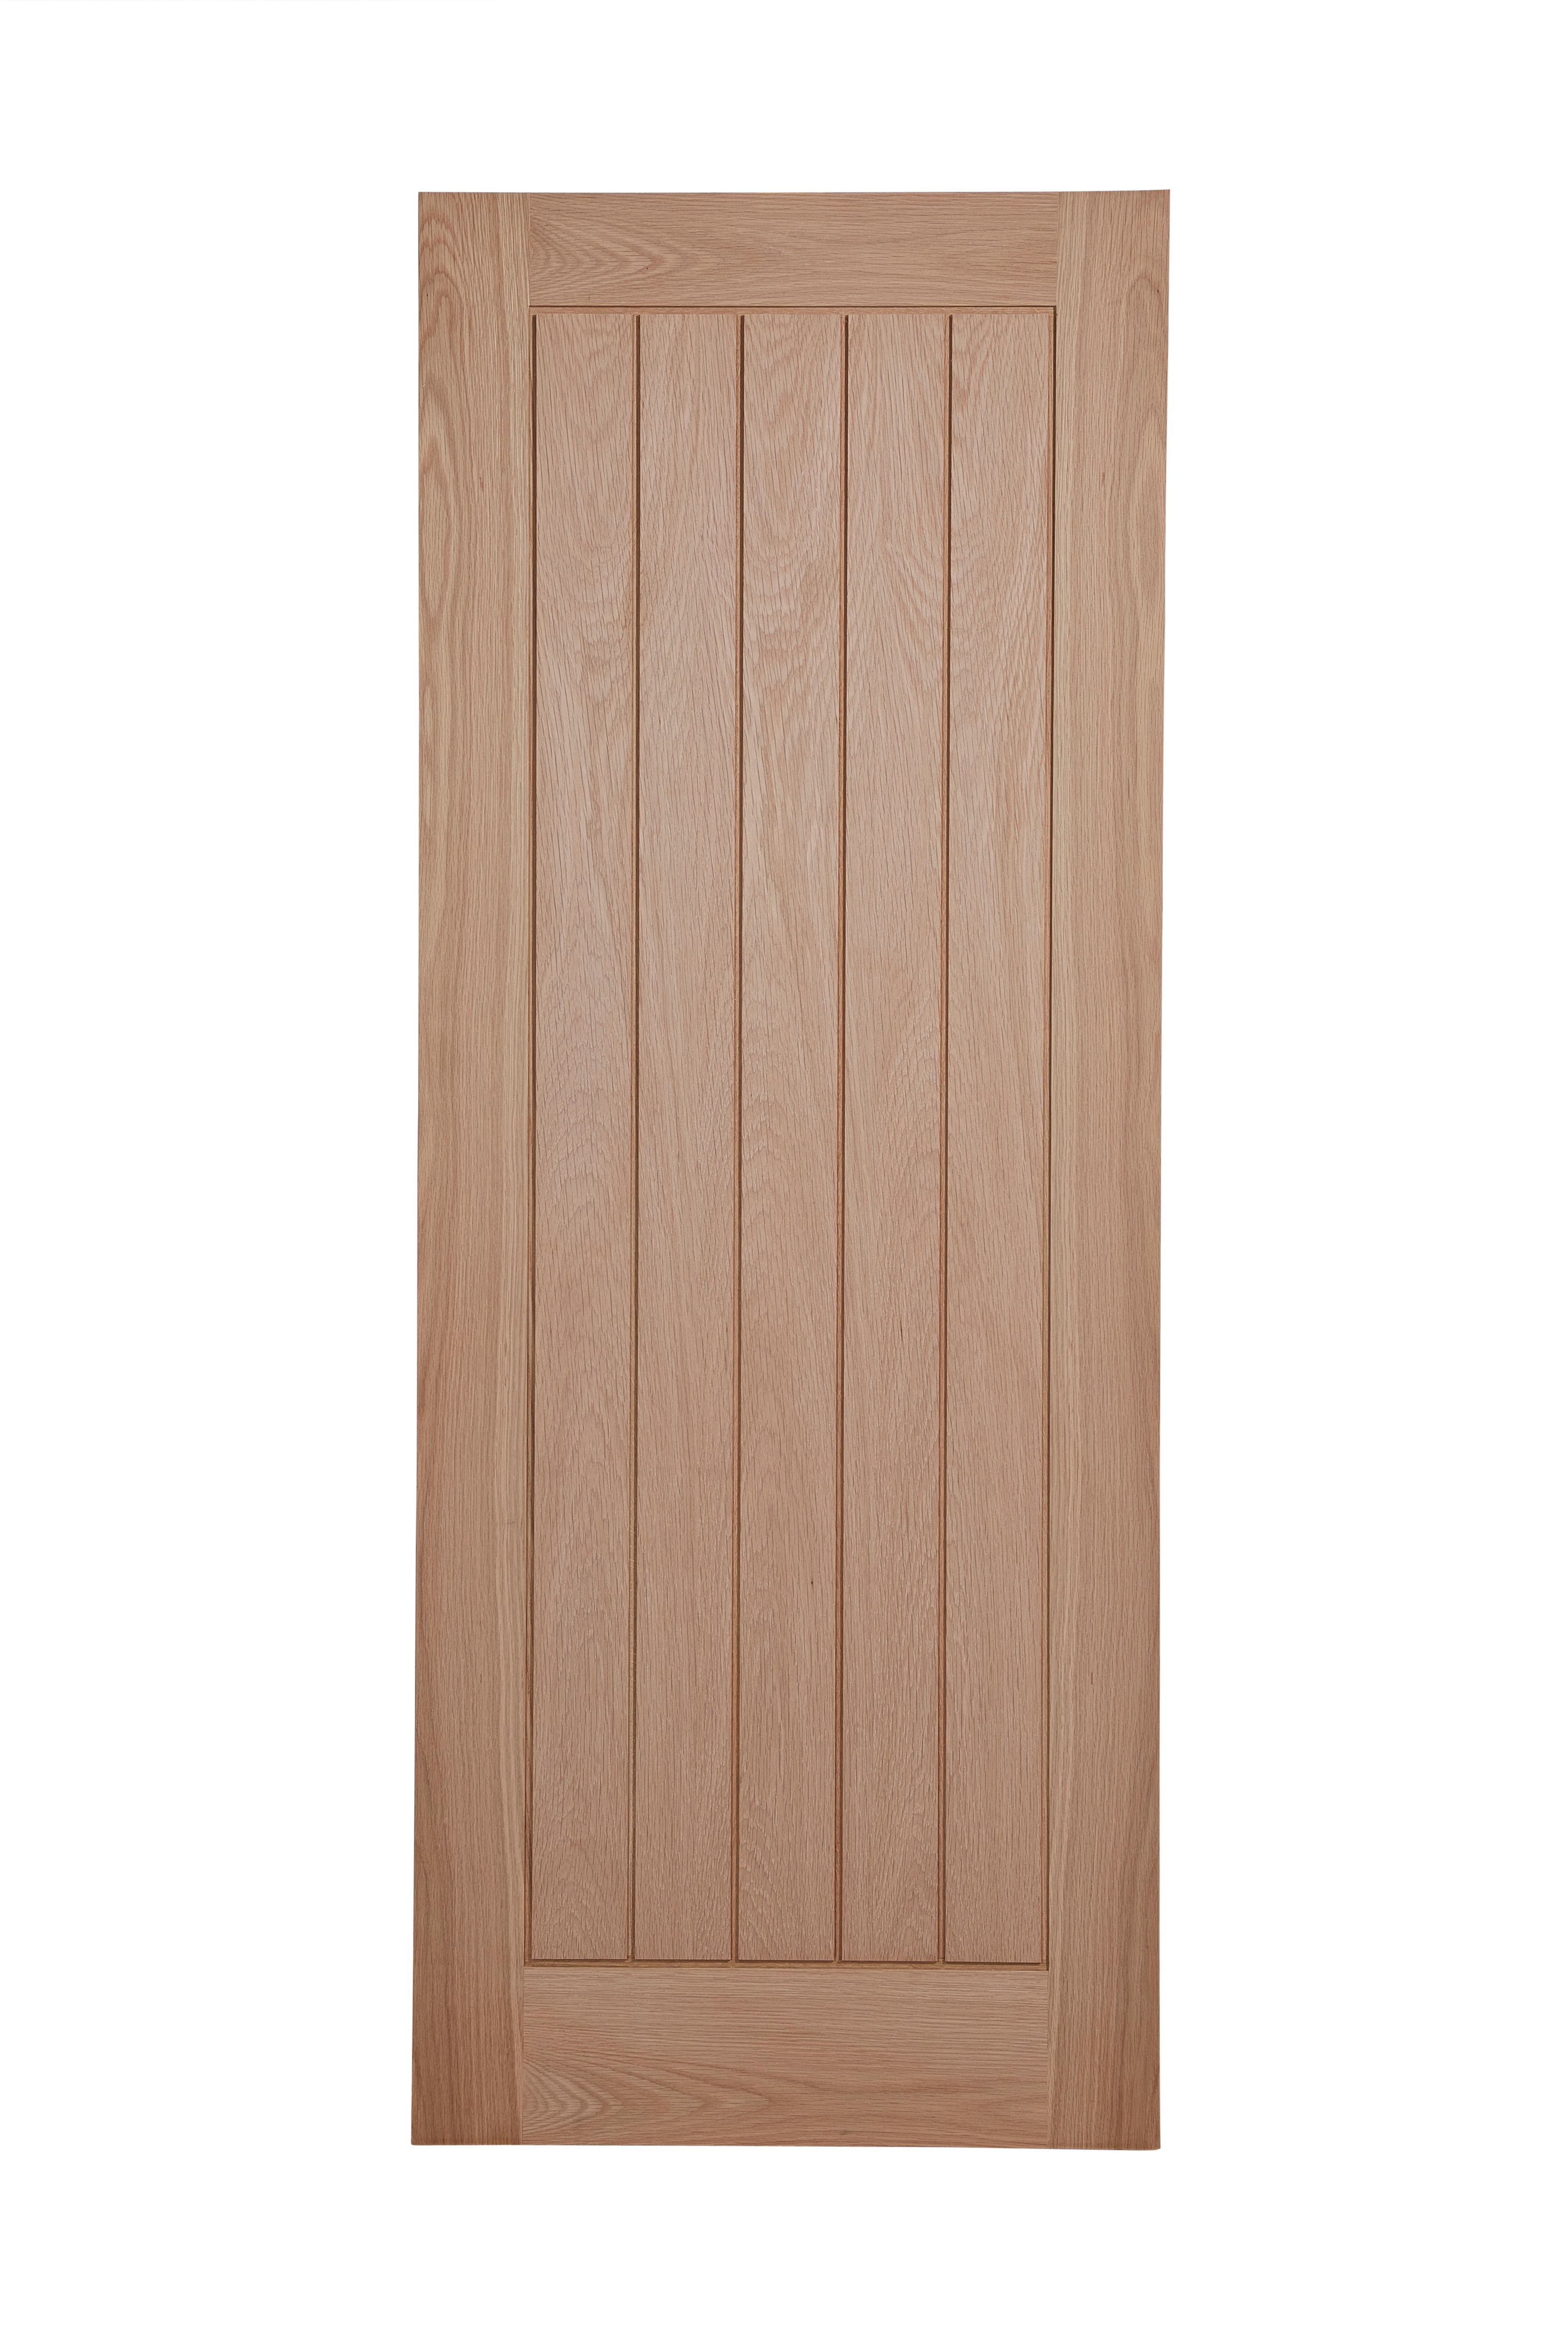 Unglazed Cottage Oak veneer Internal Door, (H)1981mm (W)838mm (T)35mm